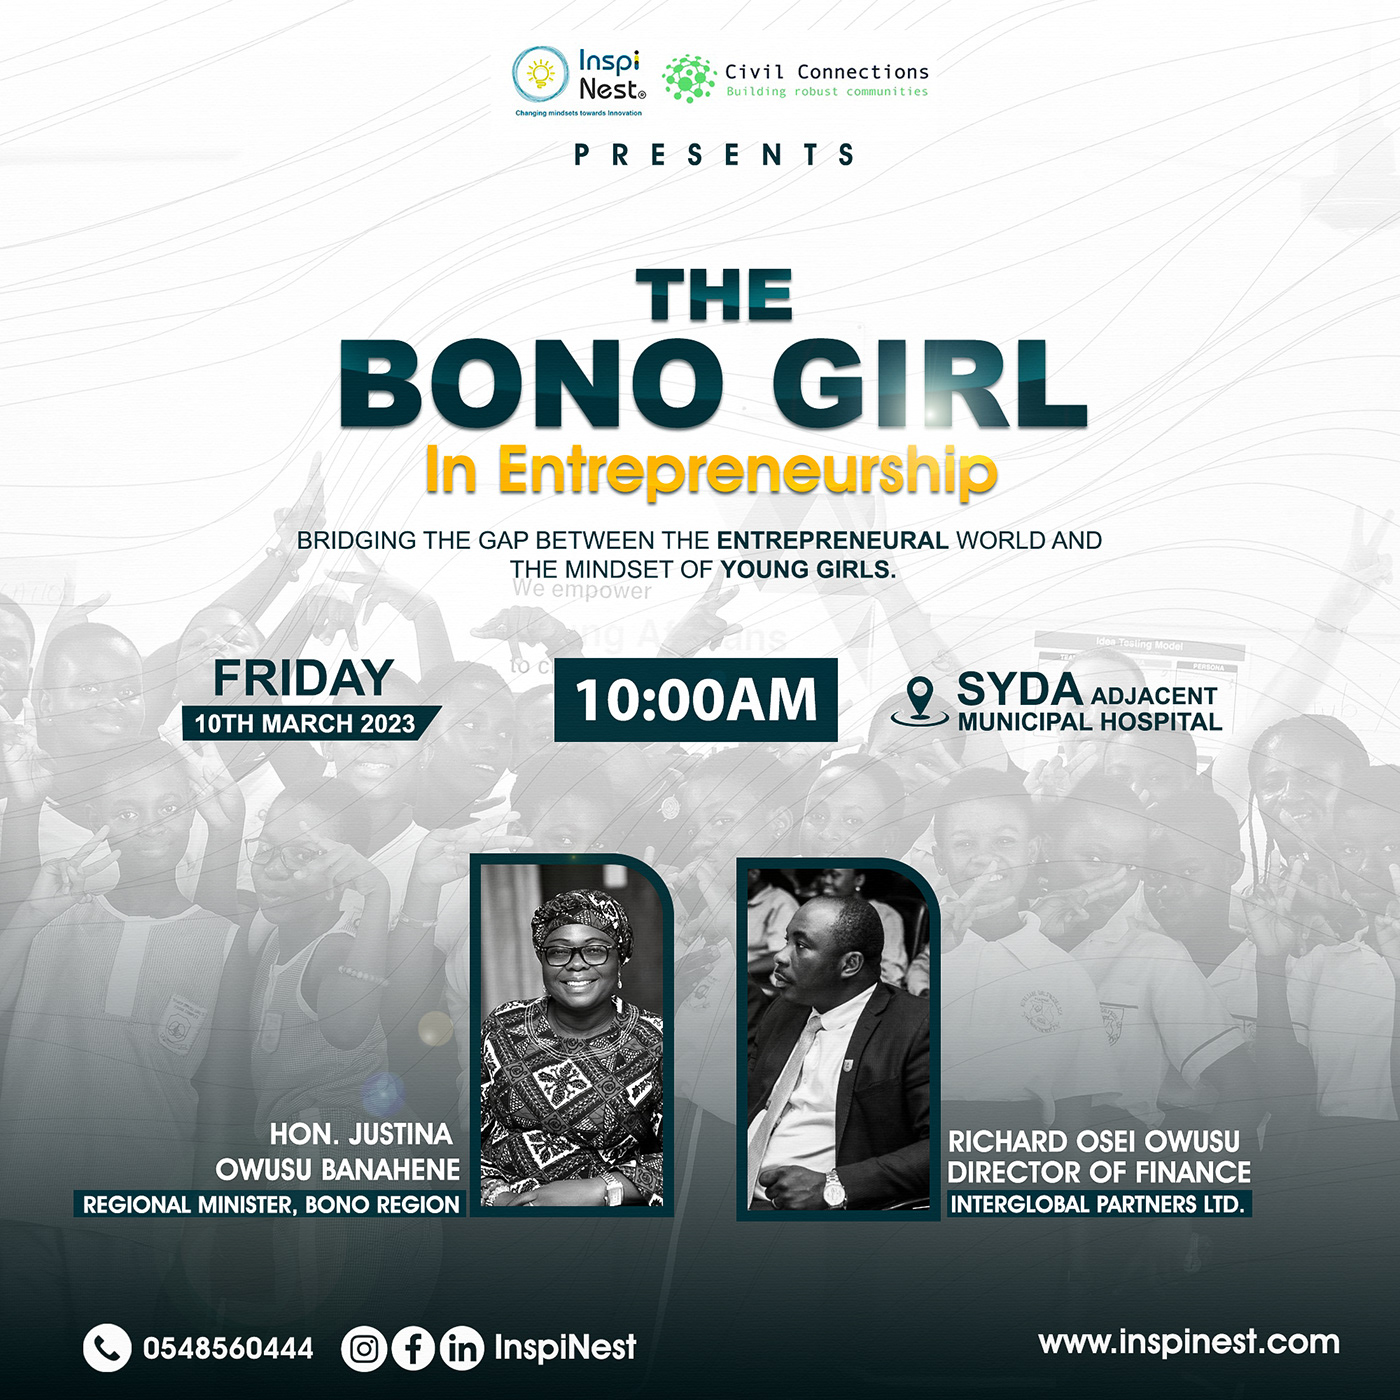 Bonogirl girlchild NGO non-profit